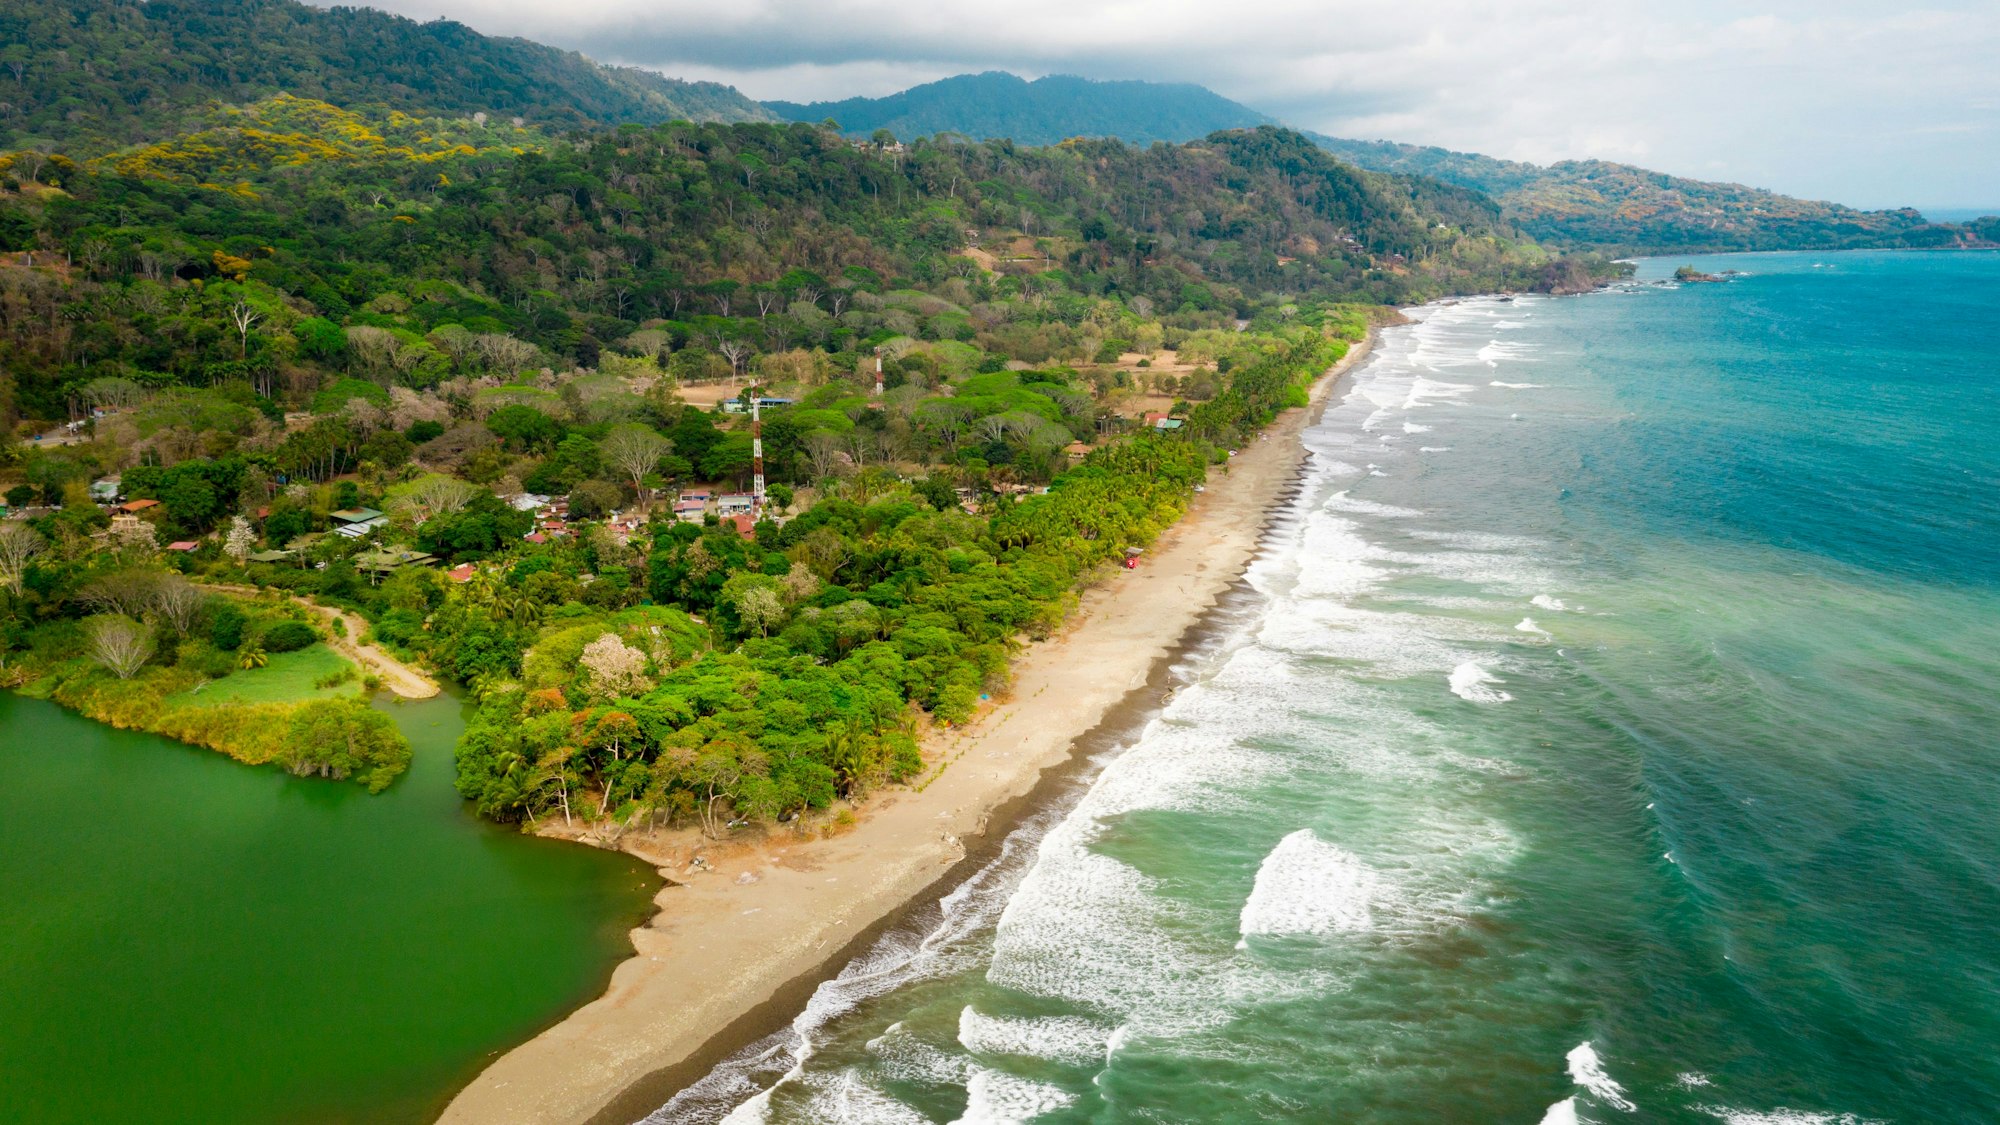 Der Strand der Ortschaft Dominical an der Pazifikküste von Costa Rica, aufgenommen mithilfe einer Drohne.